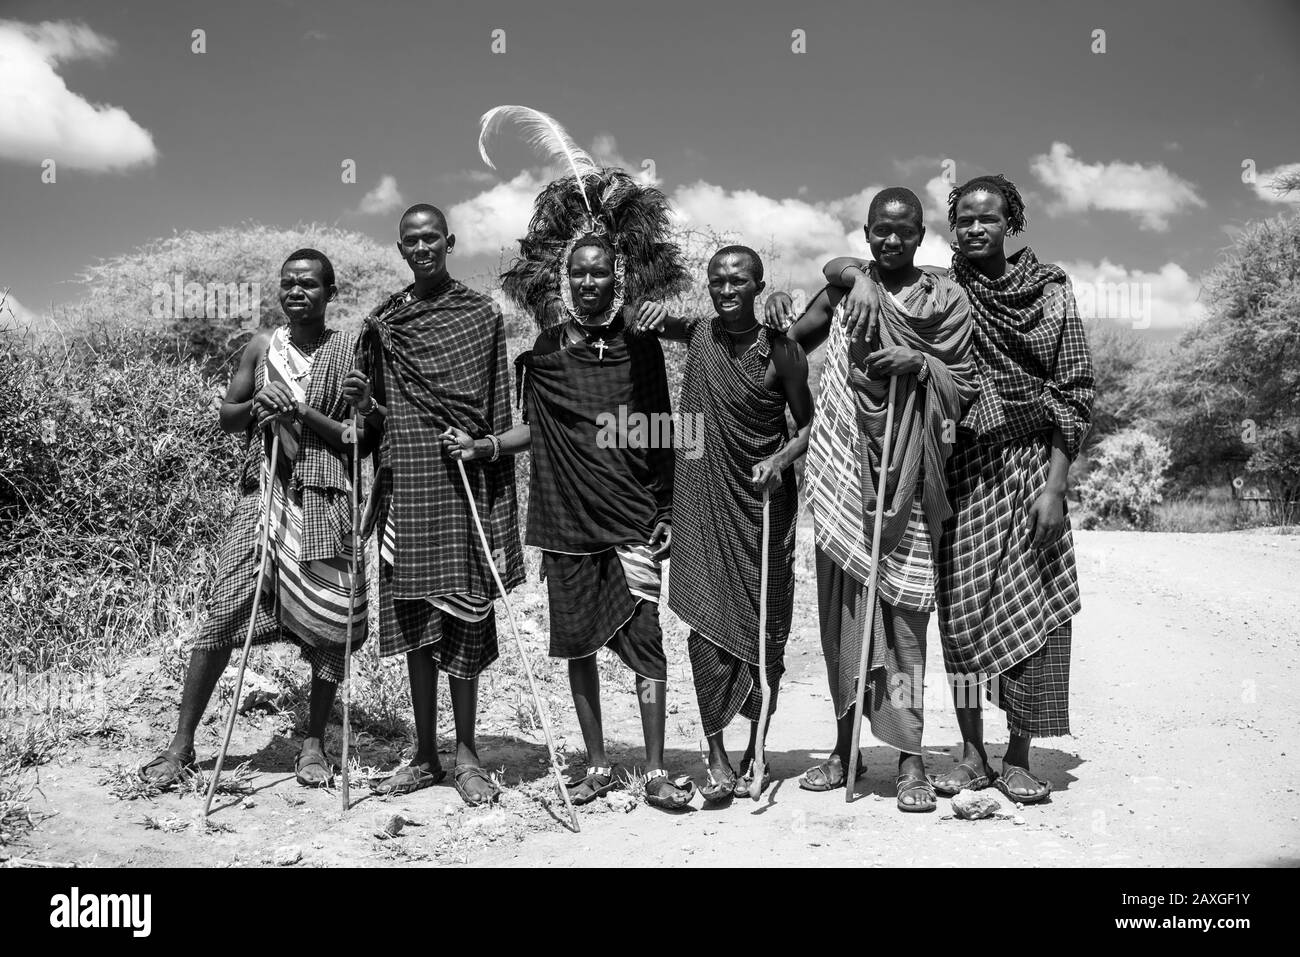 Gruppe der gutaussehenden lokalen Maasai in traditionellem Kleid. Liebte das Drama der Schwarz-Weiß-Version. Stockfoto